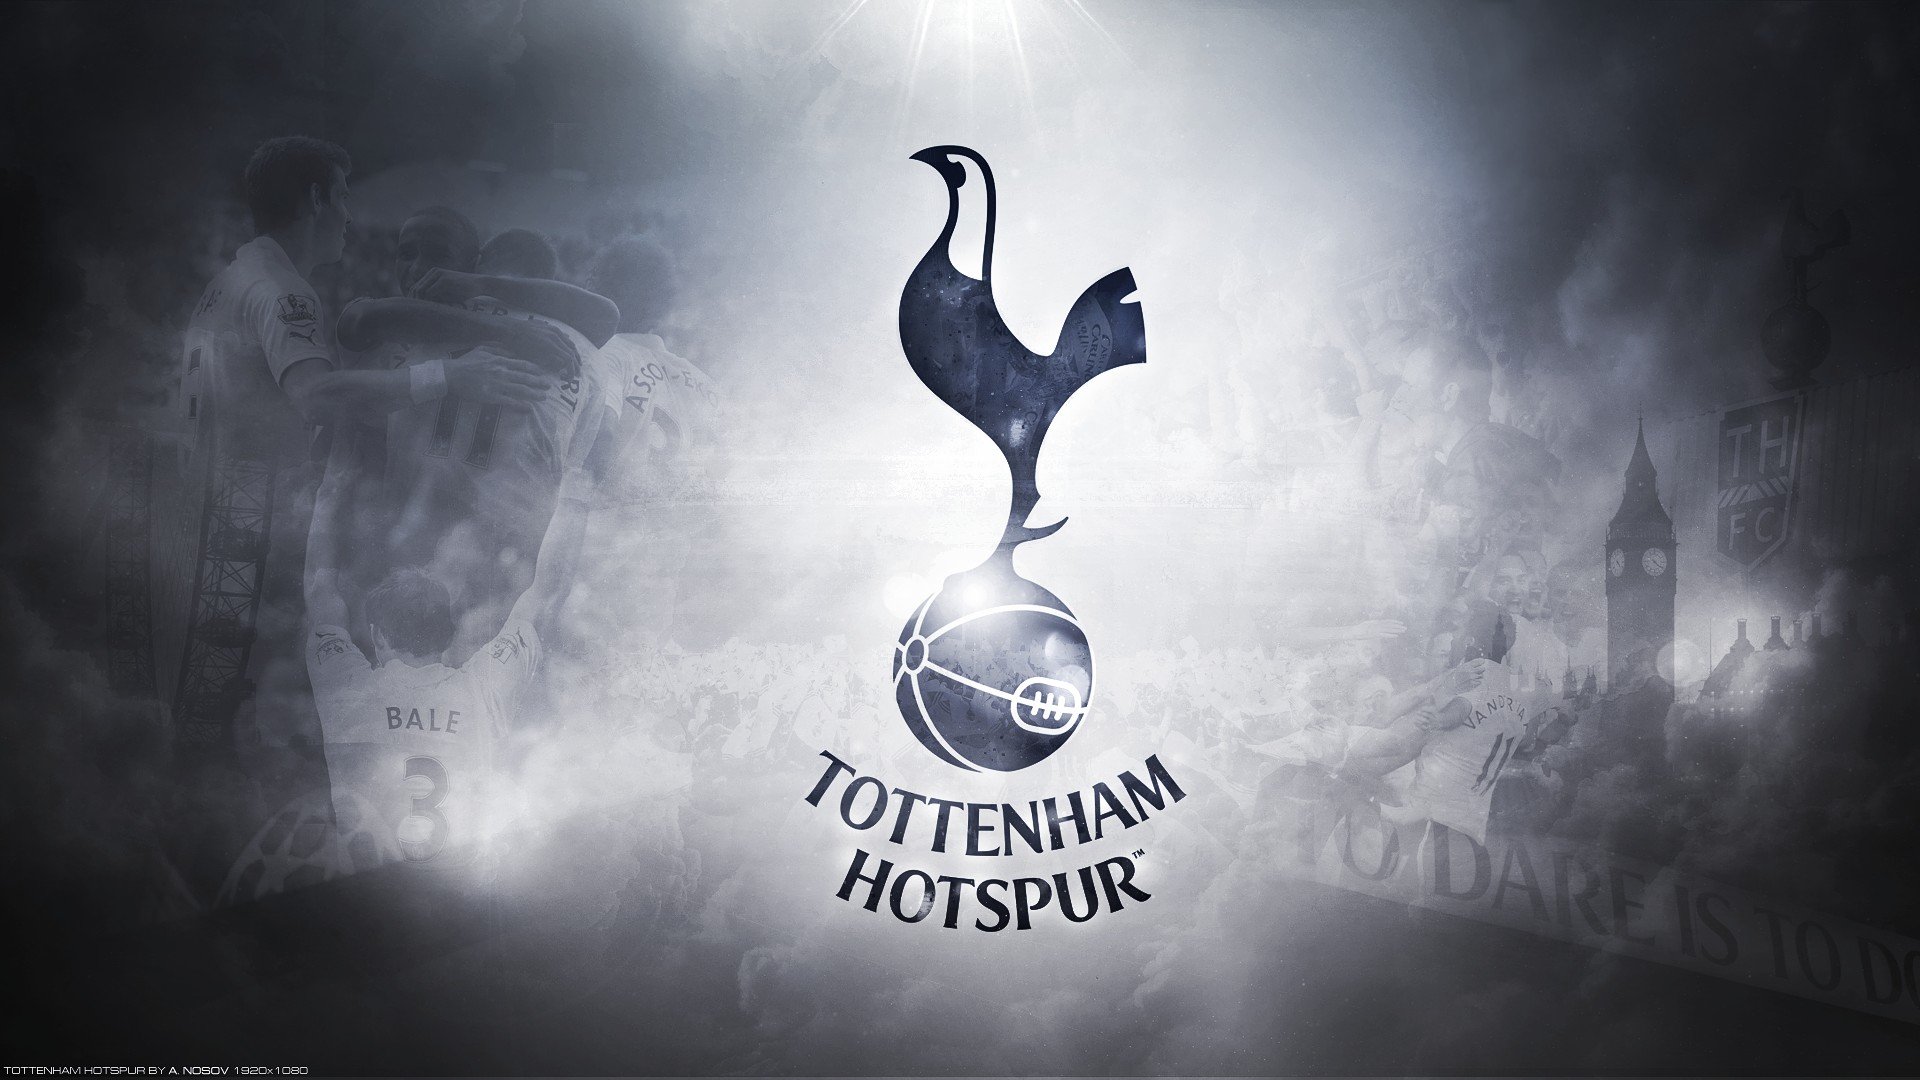 Tottenham Hotspur, Tottenham, COYS, Spurs, Eriksen HD Wallpapers ...